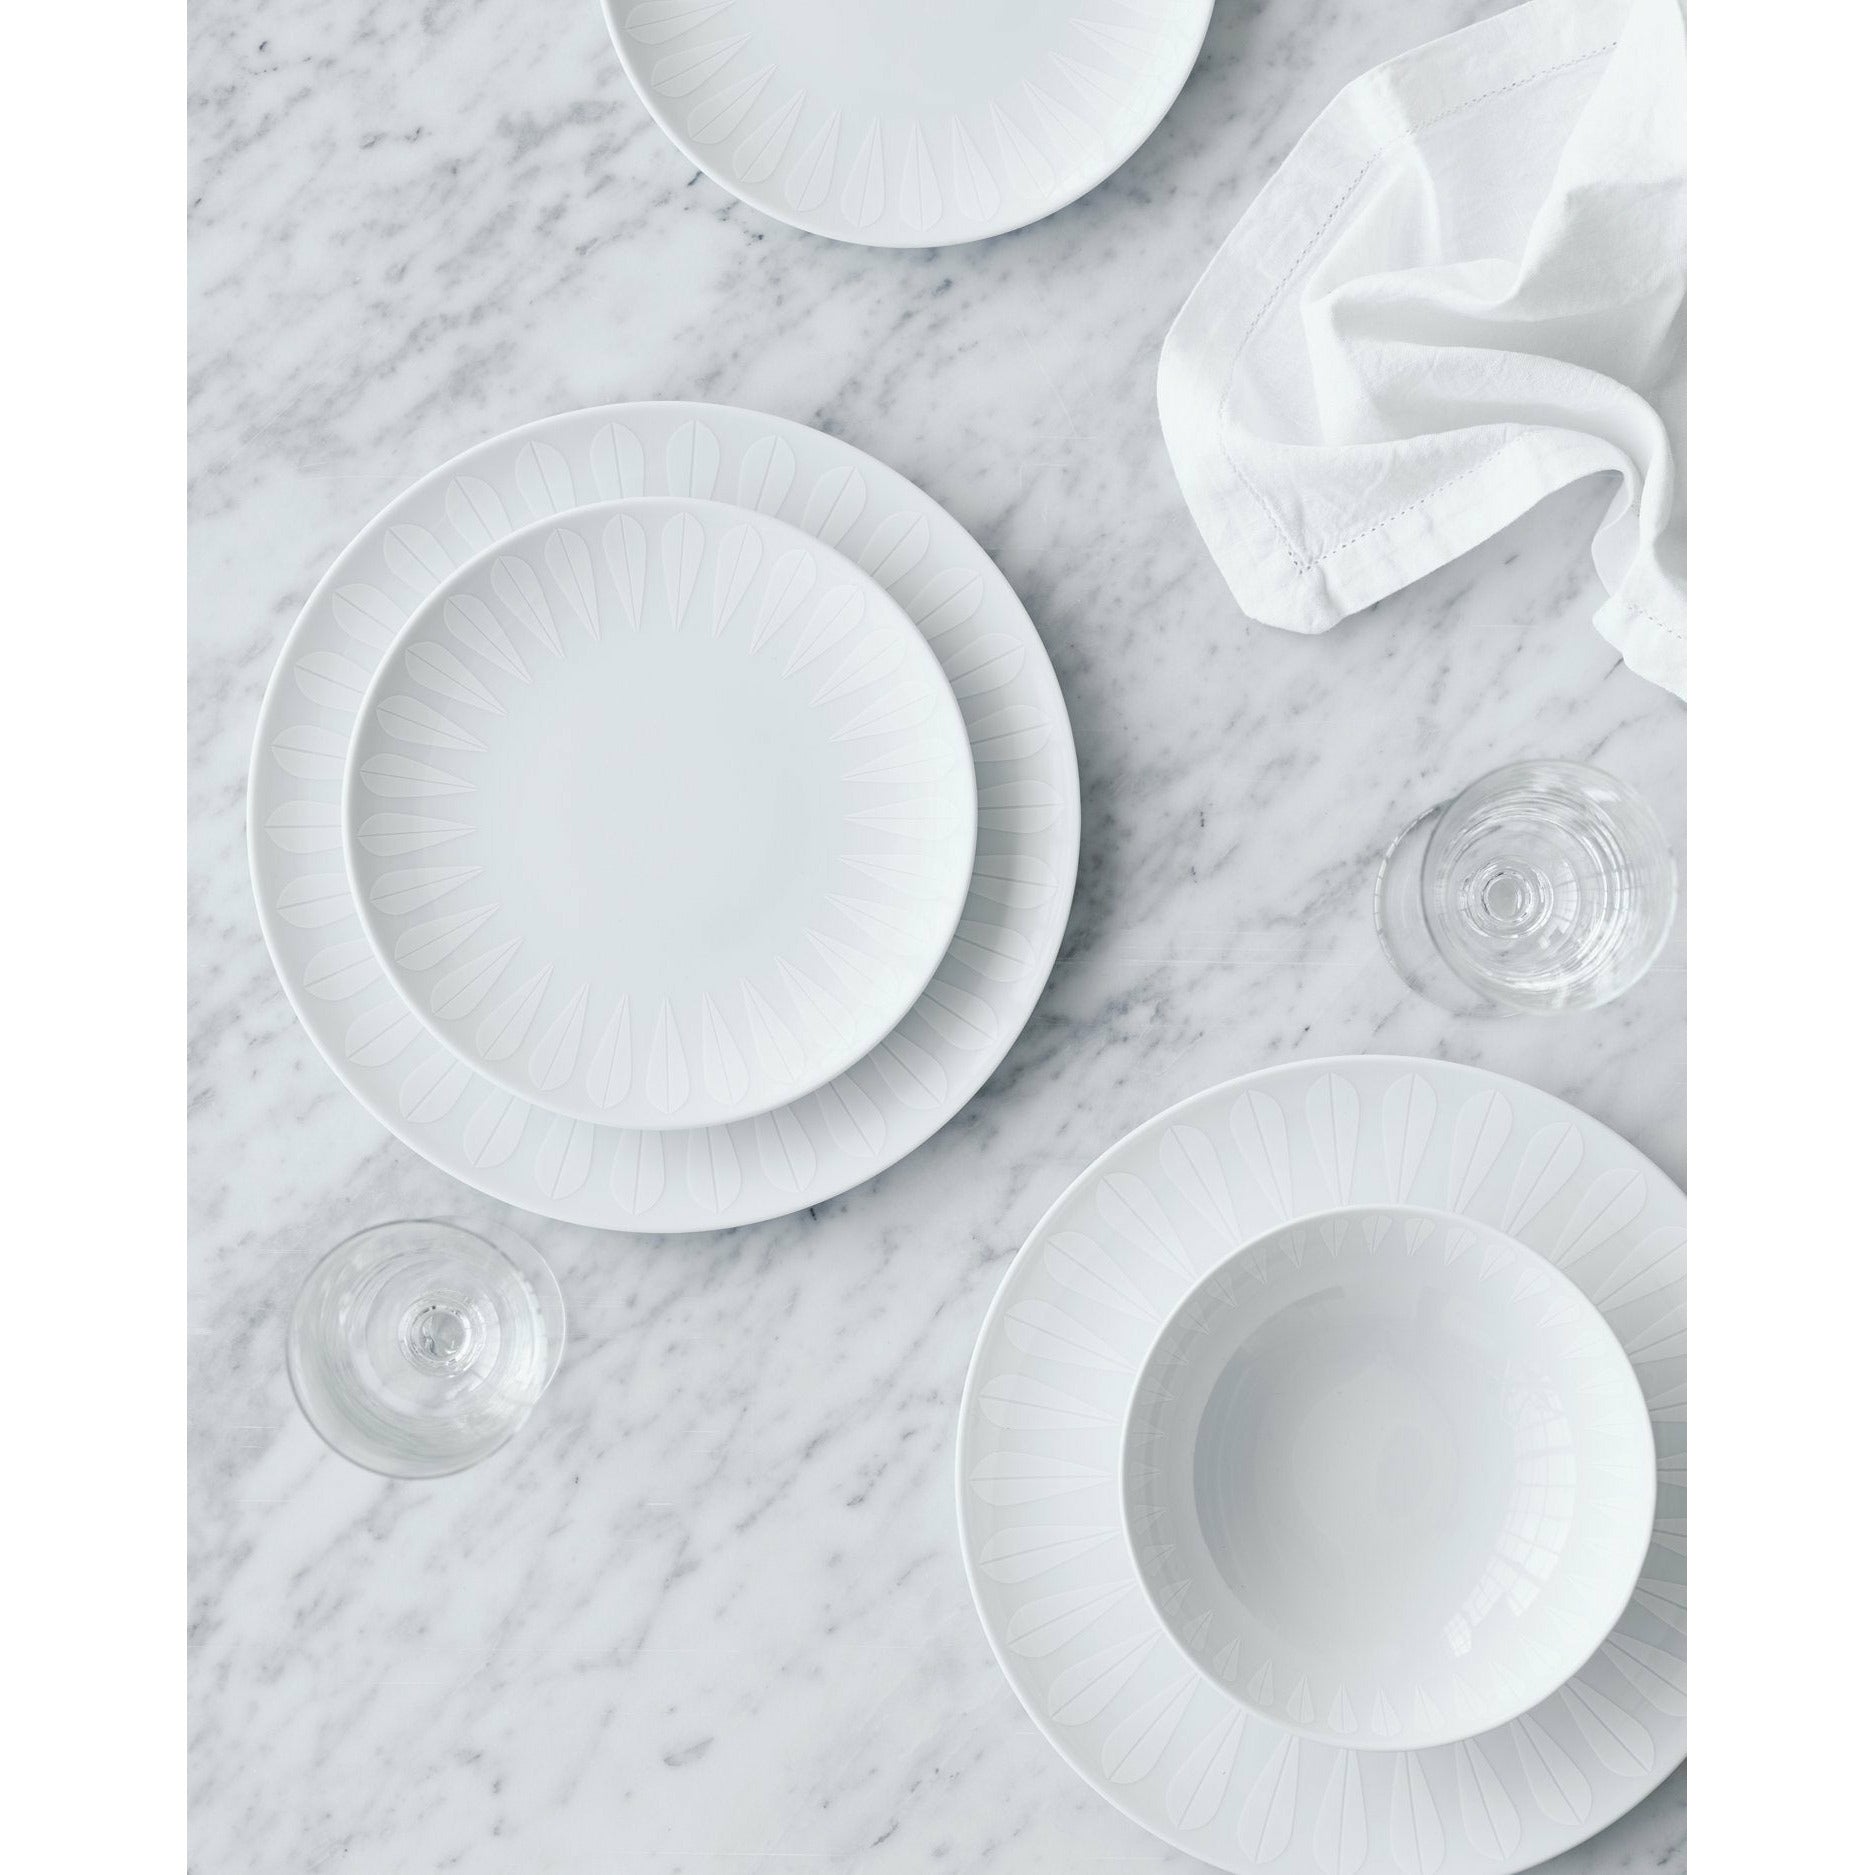 Lucie Kaas Arne Clausen Deep Plate White Lotus, Ø18 cm